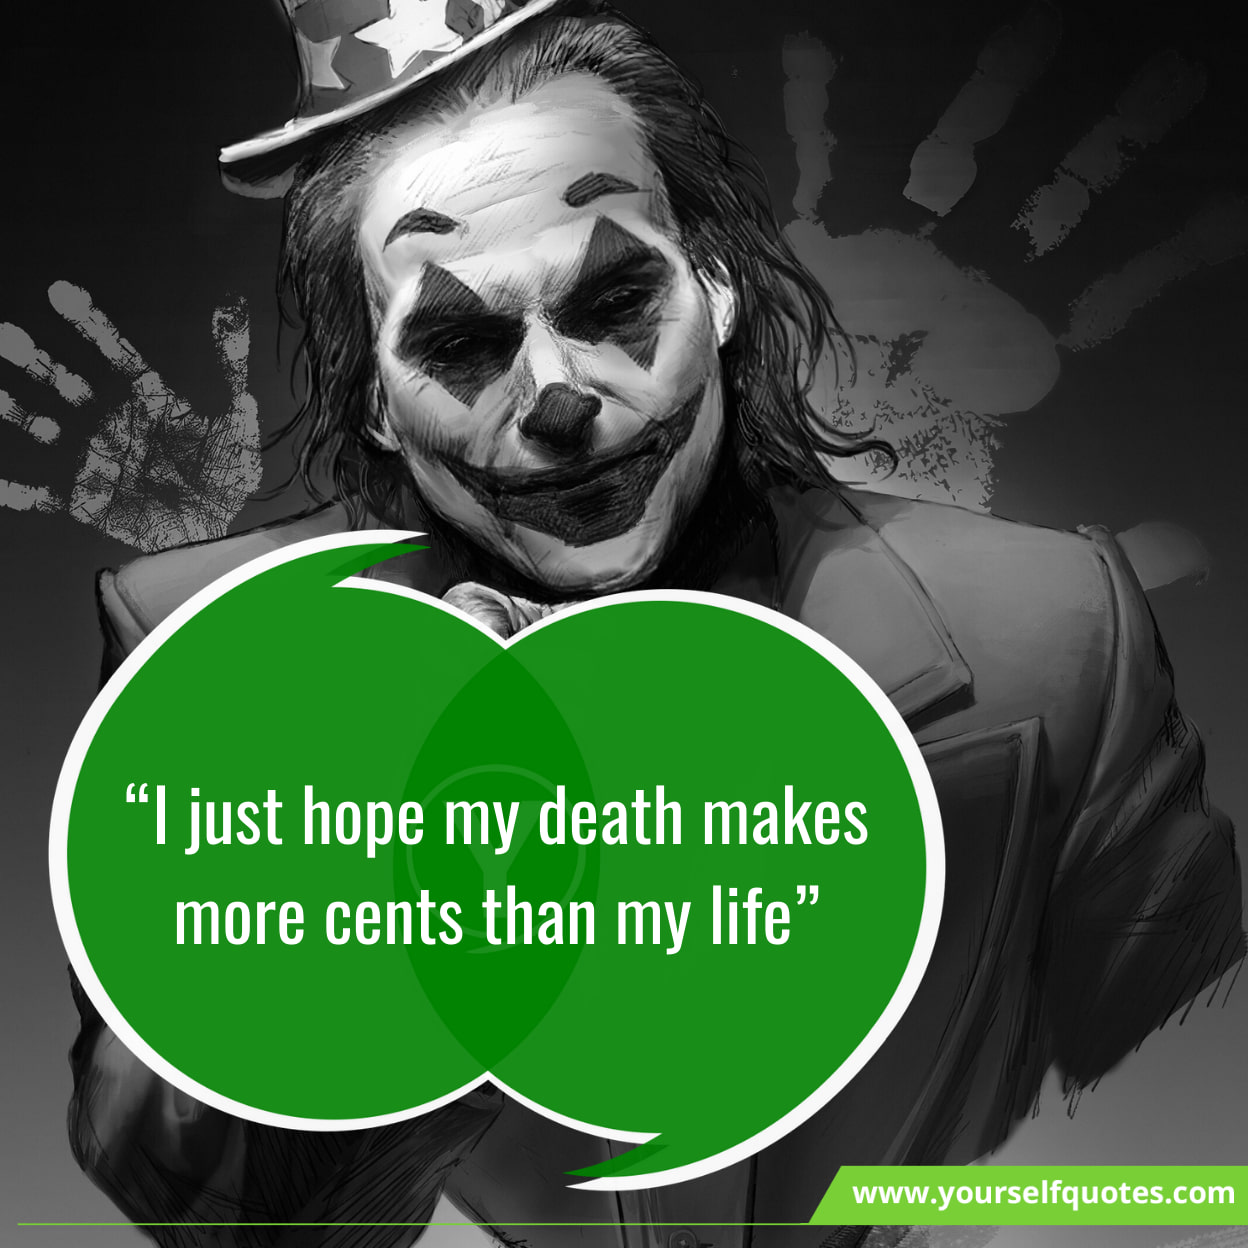 Dark Knight Joker Quotes Wallpaper Hd